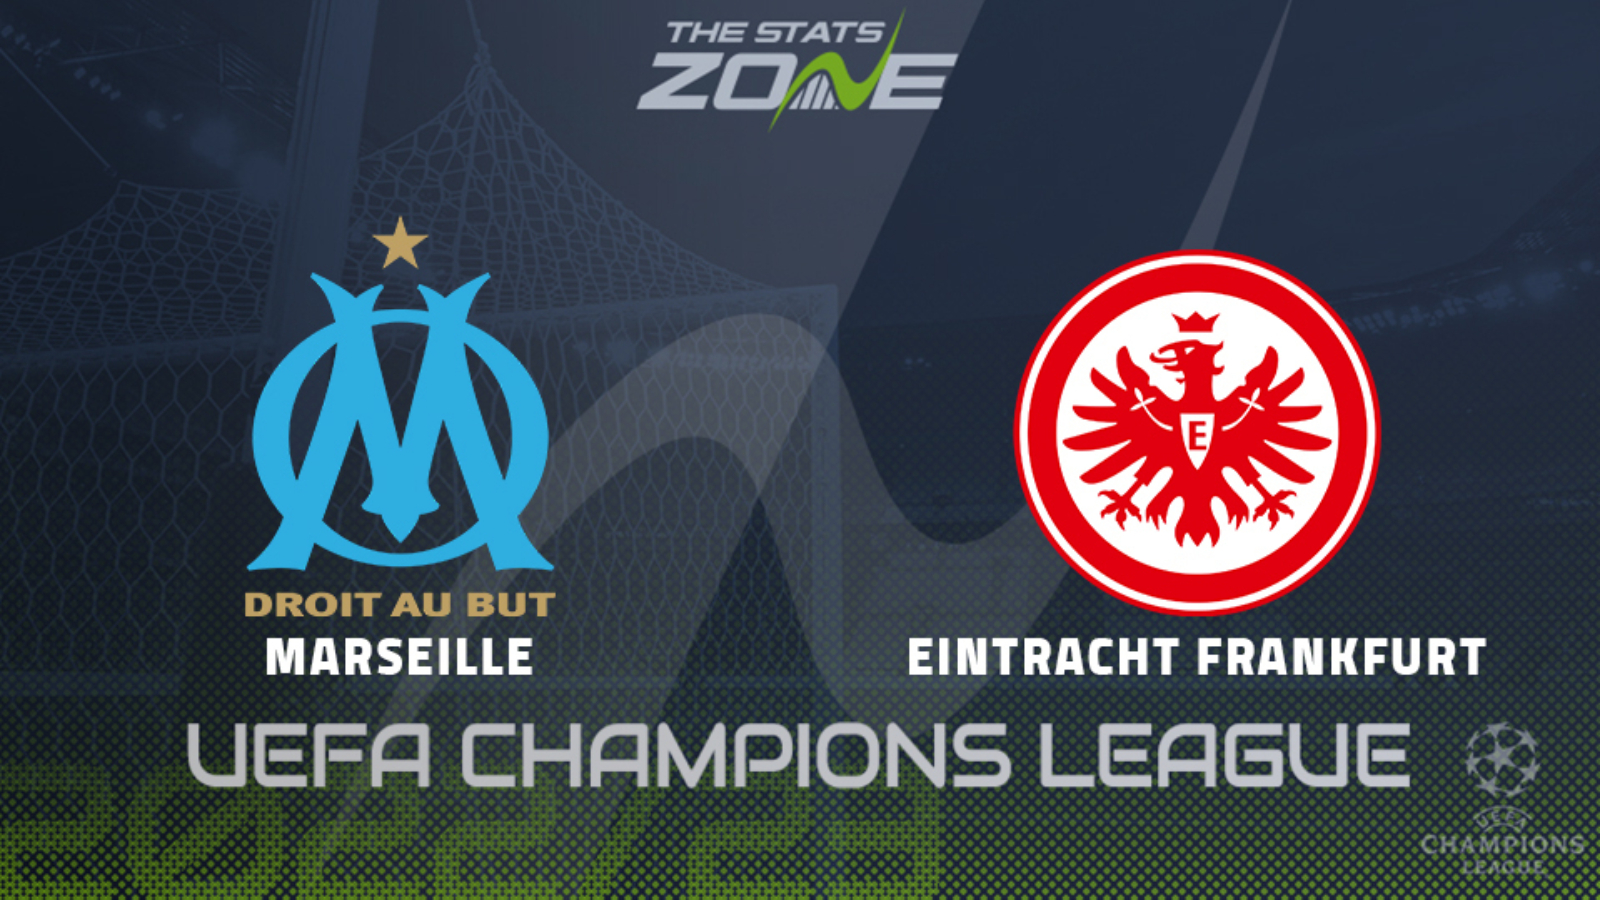 Marseille vs Eintracht Frankfurt – Group Stage